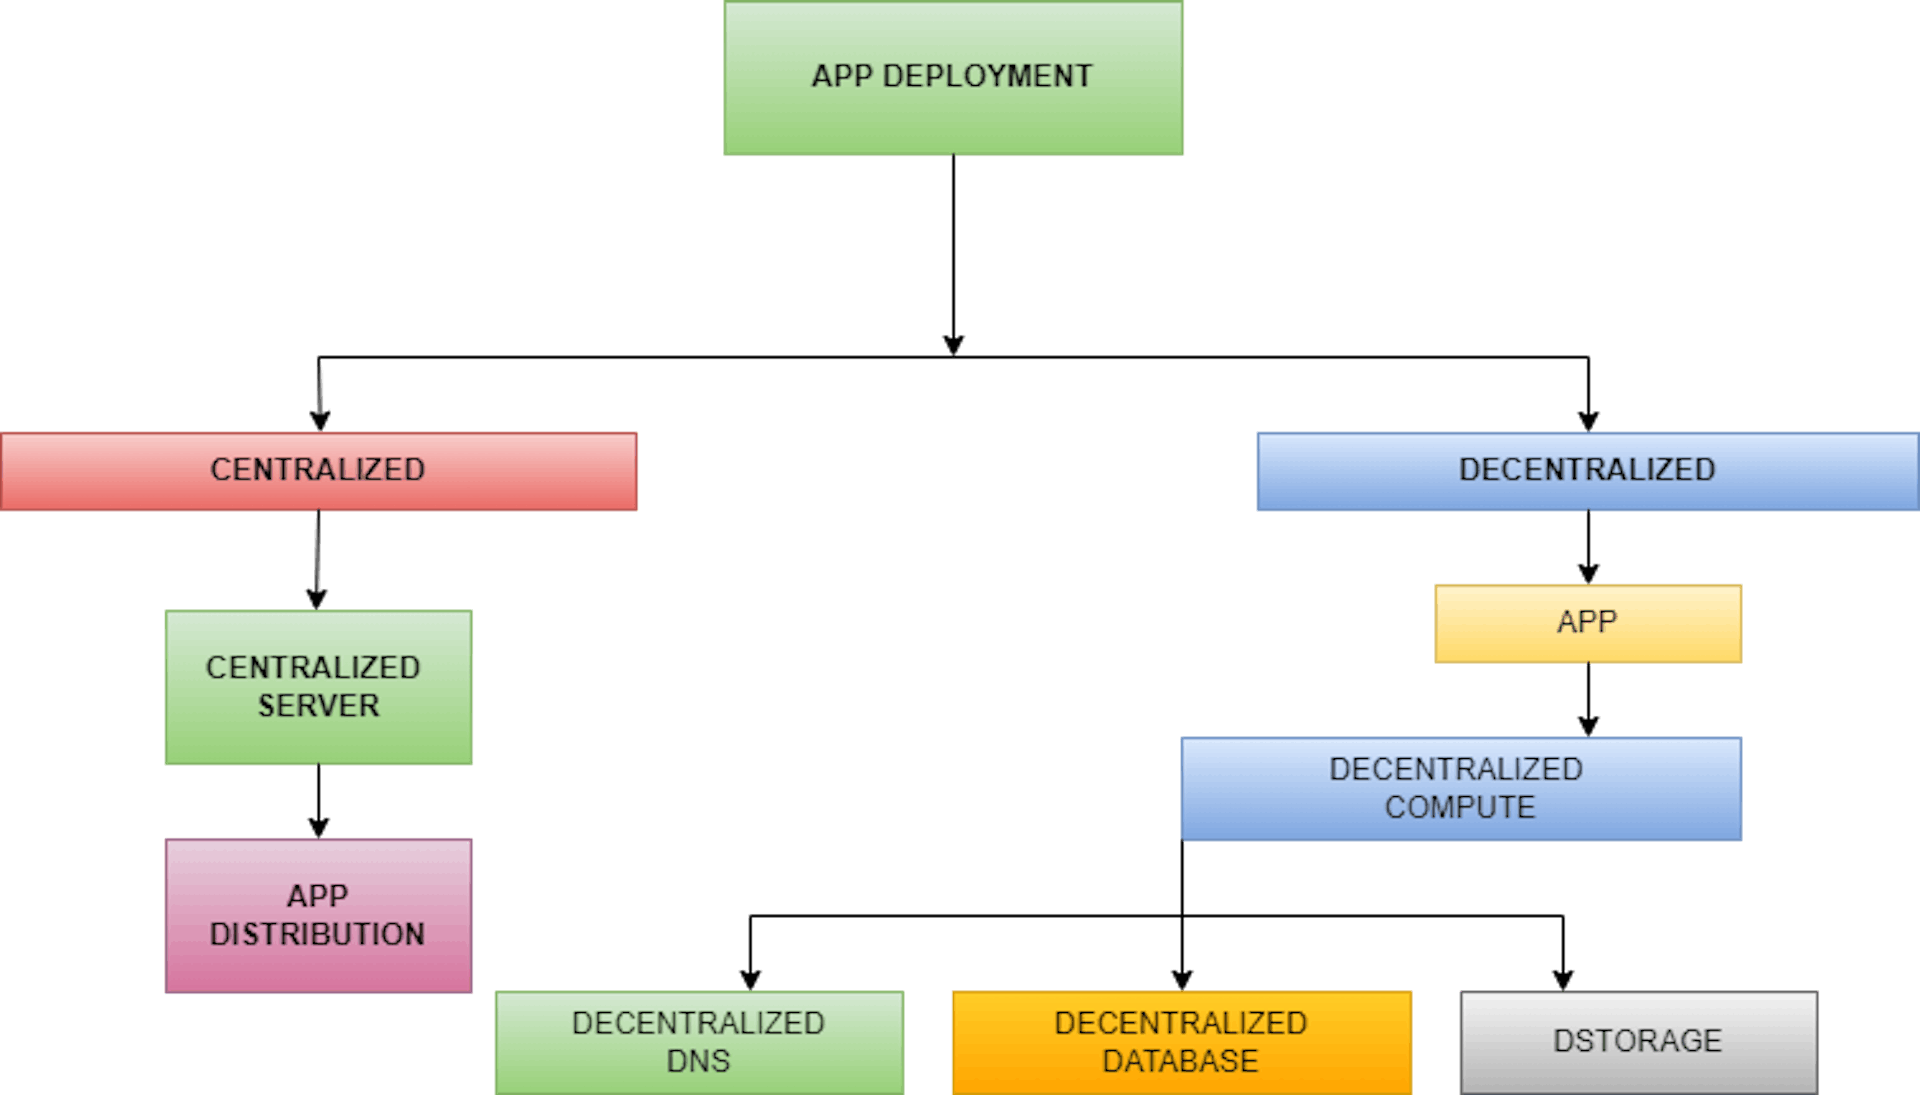 Figure: App Deployment(Centralized vs. Decentralized) 